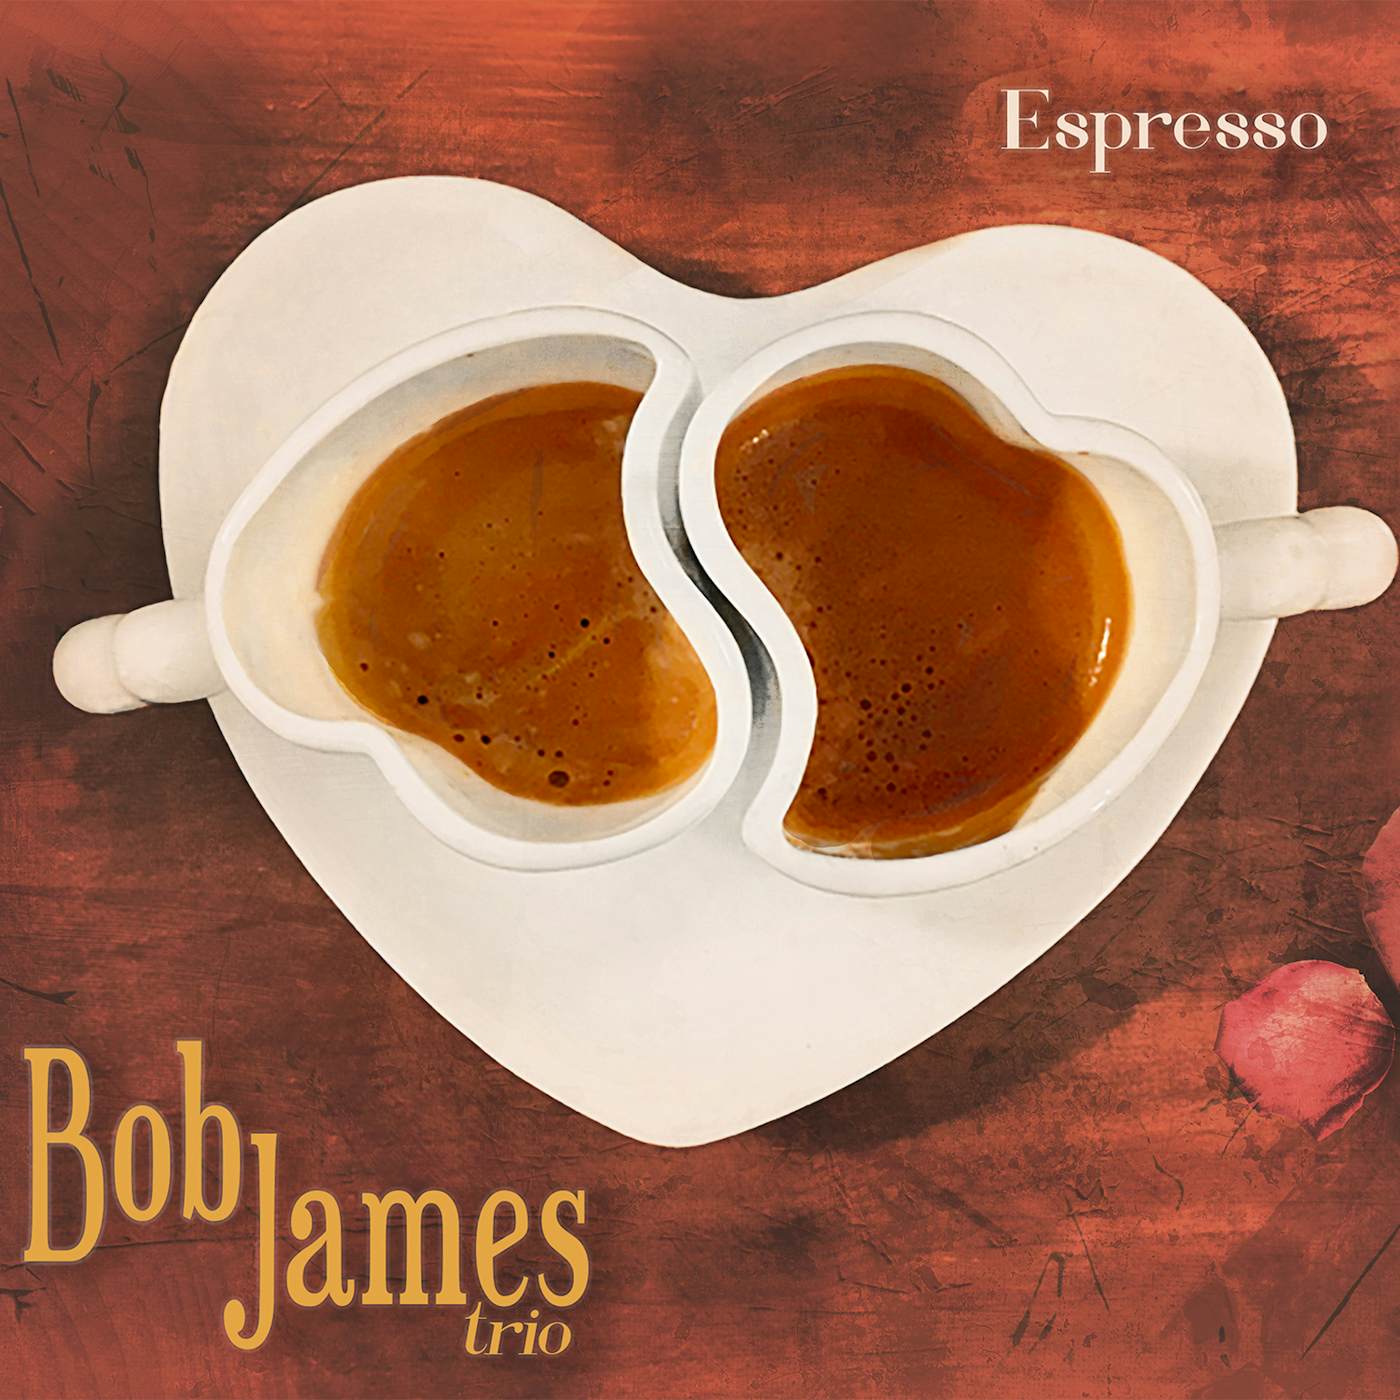 Bob James ESPRESSO (MQA CD) CD